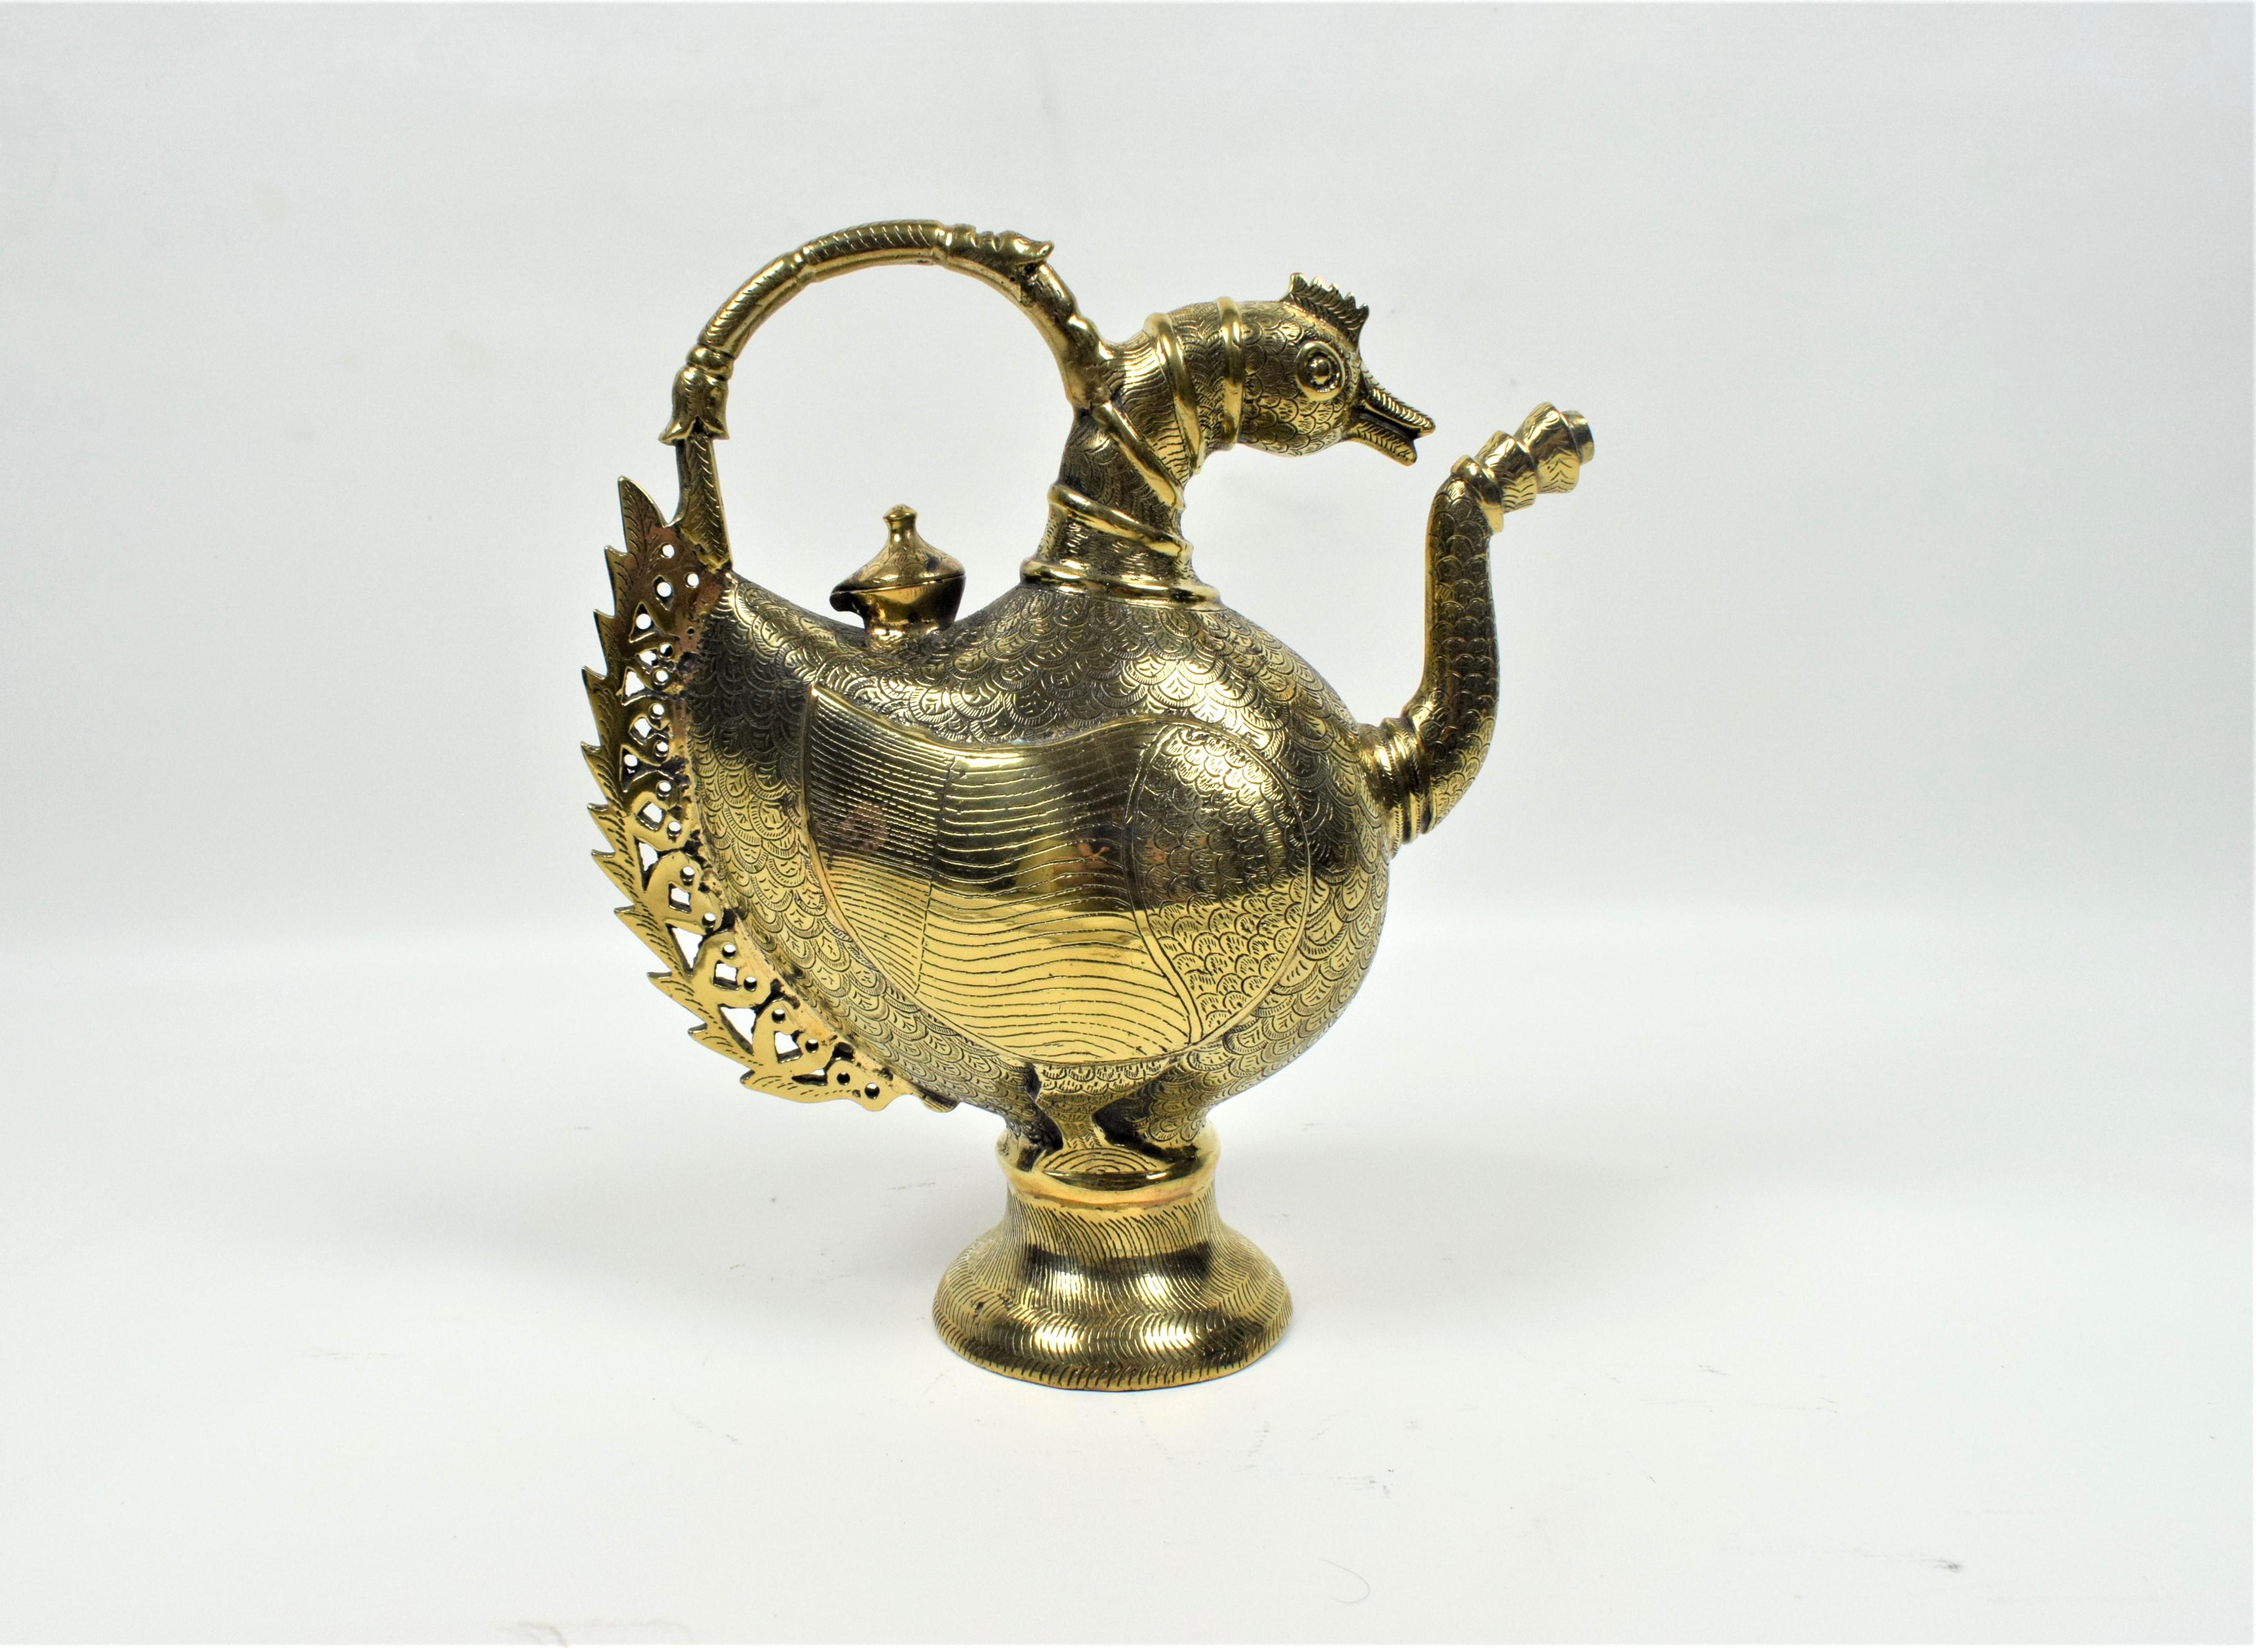 Die Kanne, ein zeremonieller Krug, hat die Form eines majestätischen Pfaus, ein bedeutendes Motiv in der Mogulkunst, das Schönheit, Anmut und Königlichkeit symbolisiert. Der Korpus der Kanne ist aus hochwertigem Messing gefertigt, einem Metall, das